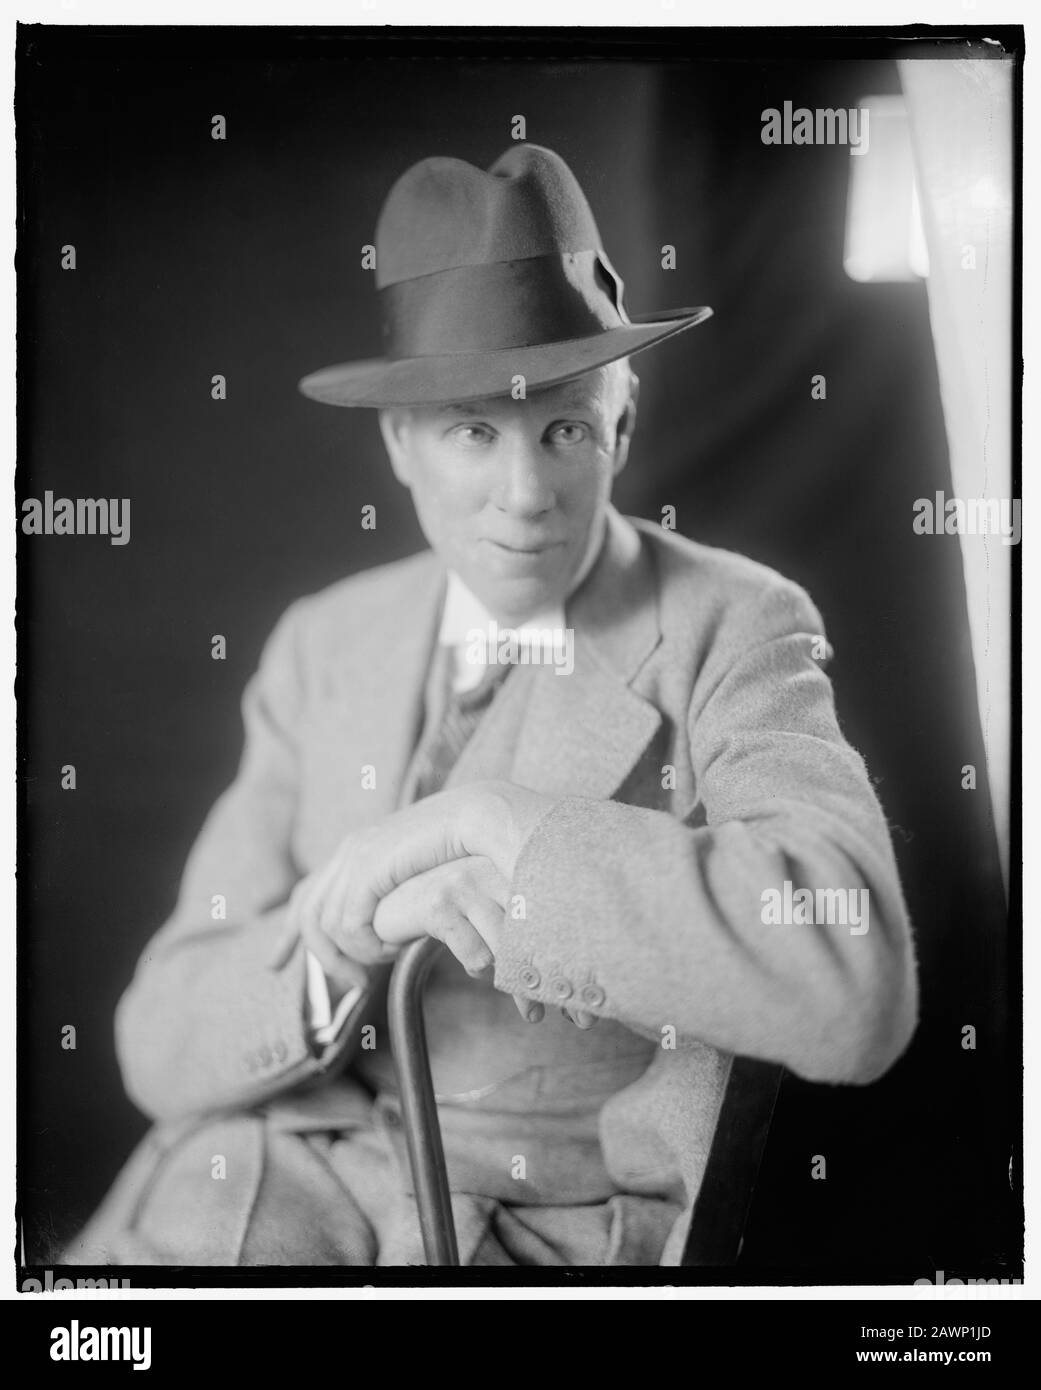 1931, Washington, USA: Der amerikanische Schriftsteller und Dramatiker SINCLAIR LEWIS (* 1885; † 1951), Nobelpreisträger für Literatur im Jahr 1930. Foto vorbei Stockfoto